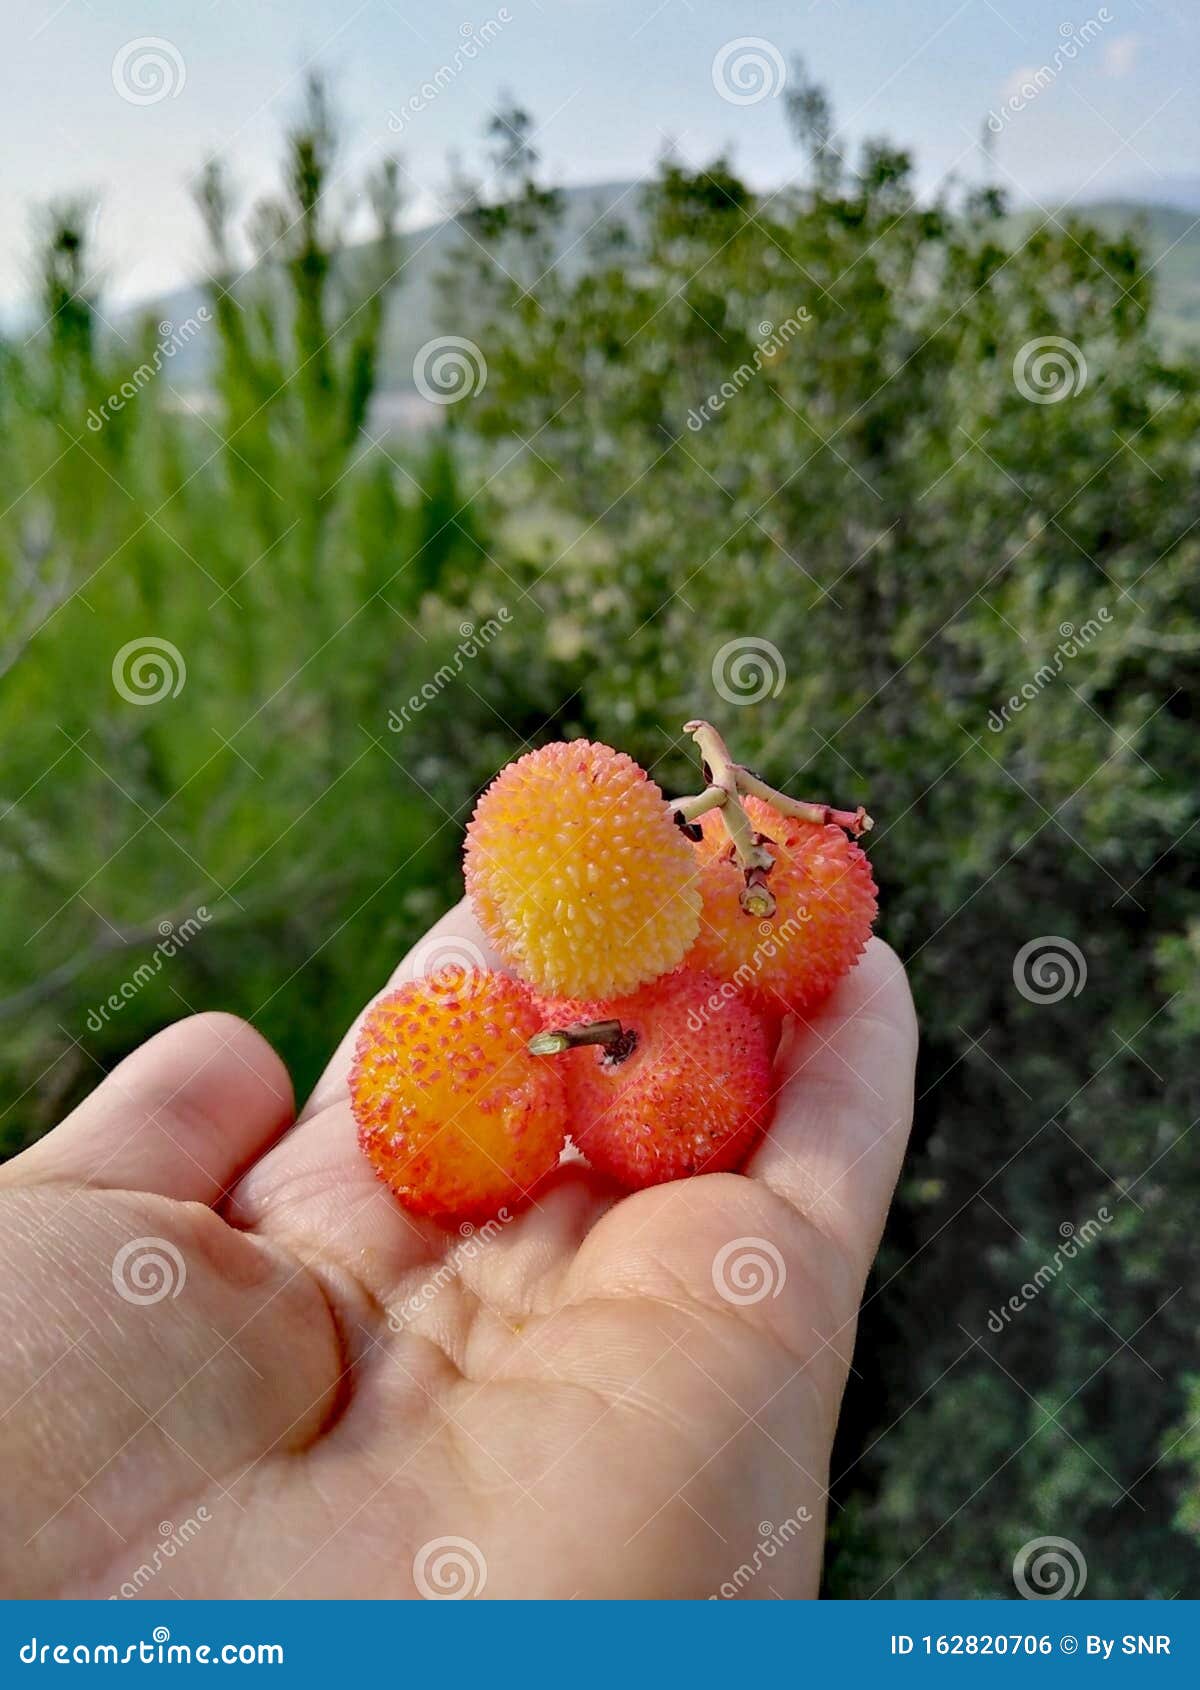 photo of rare berry fruit